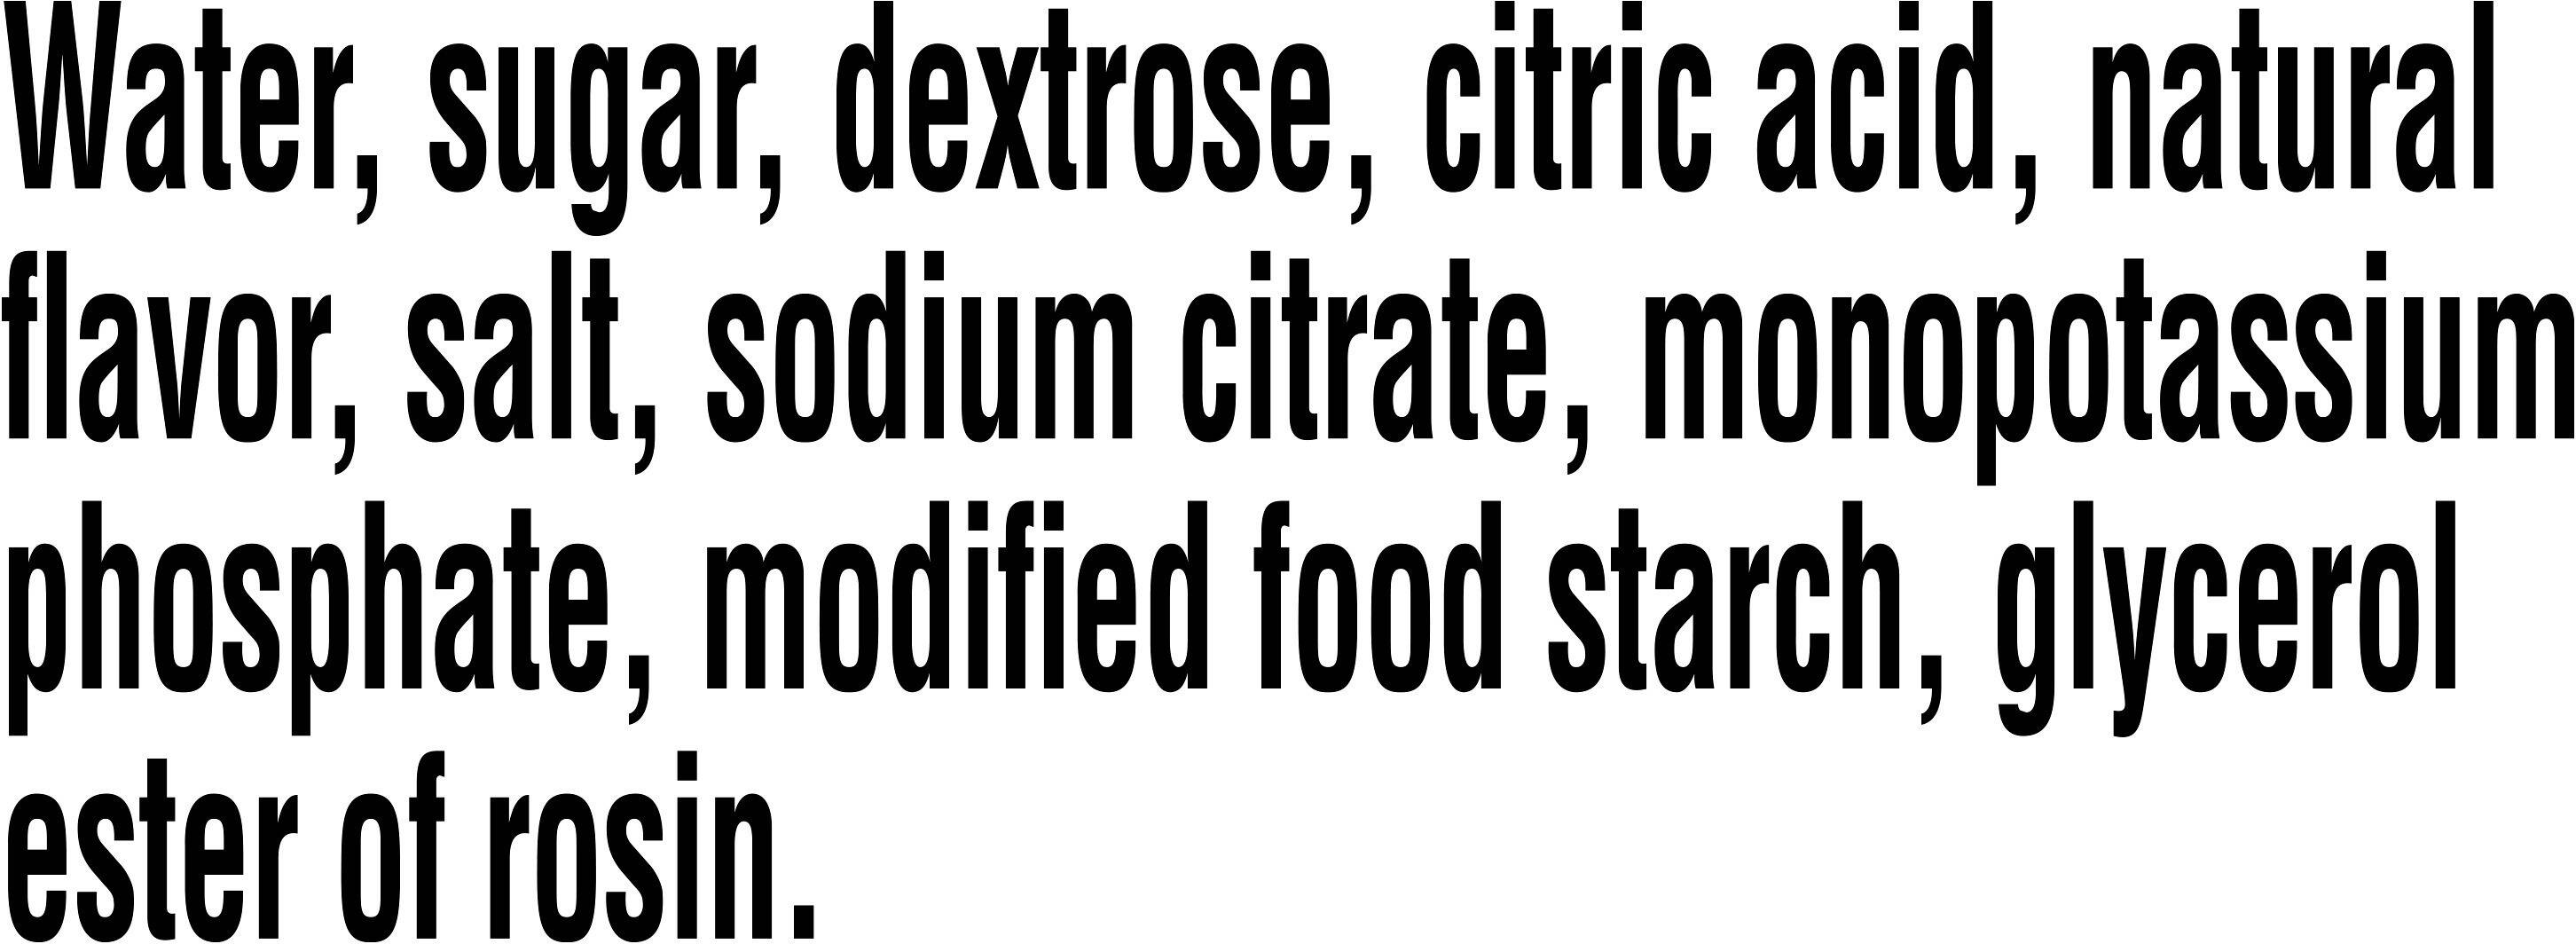 Image describing nutrition information for product Gatorade Glacier Cherry